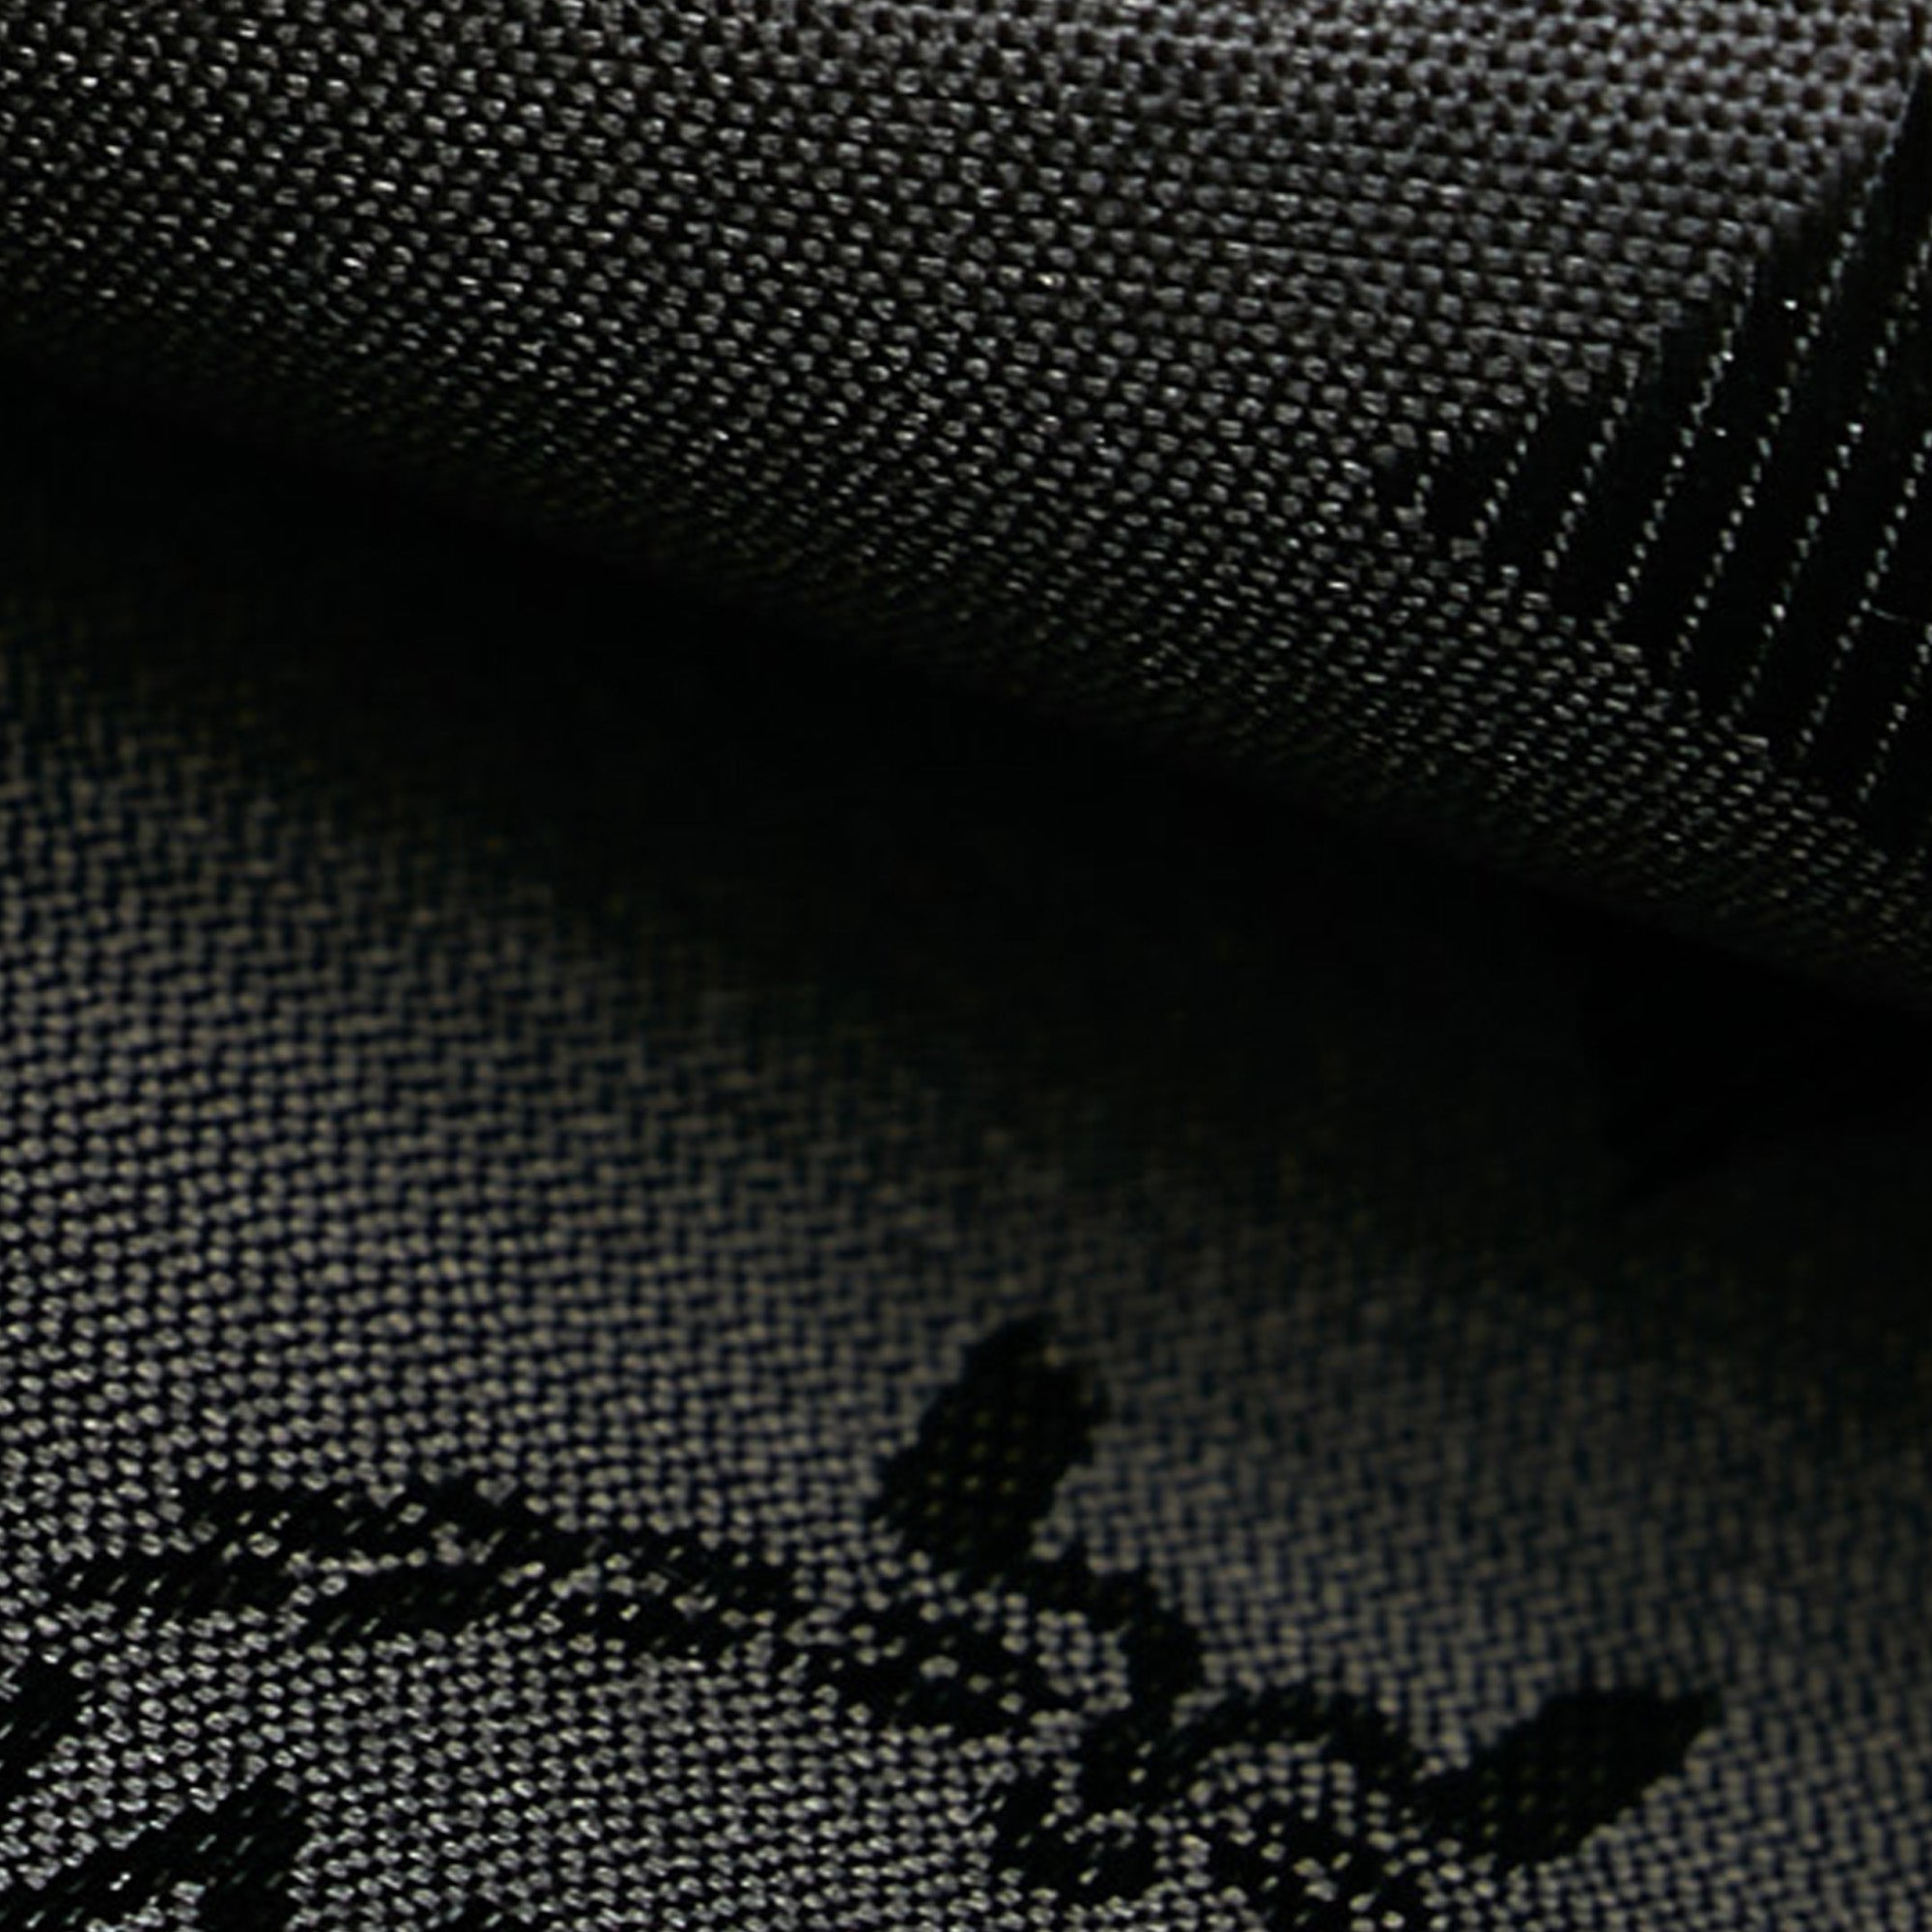 Black MCM Visetos Stark Leather Backpack Bag – Designer Revival